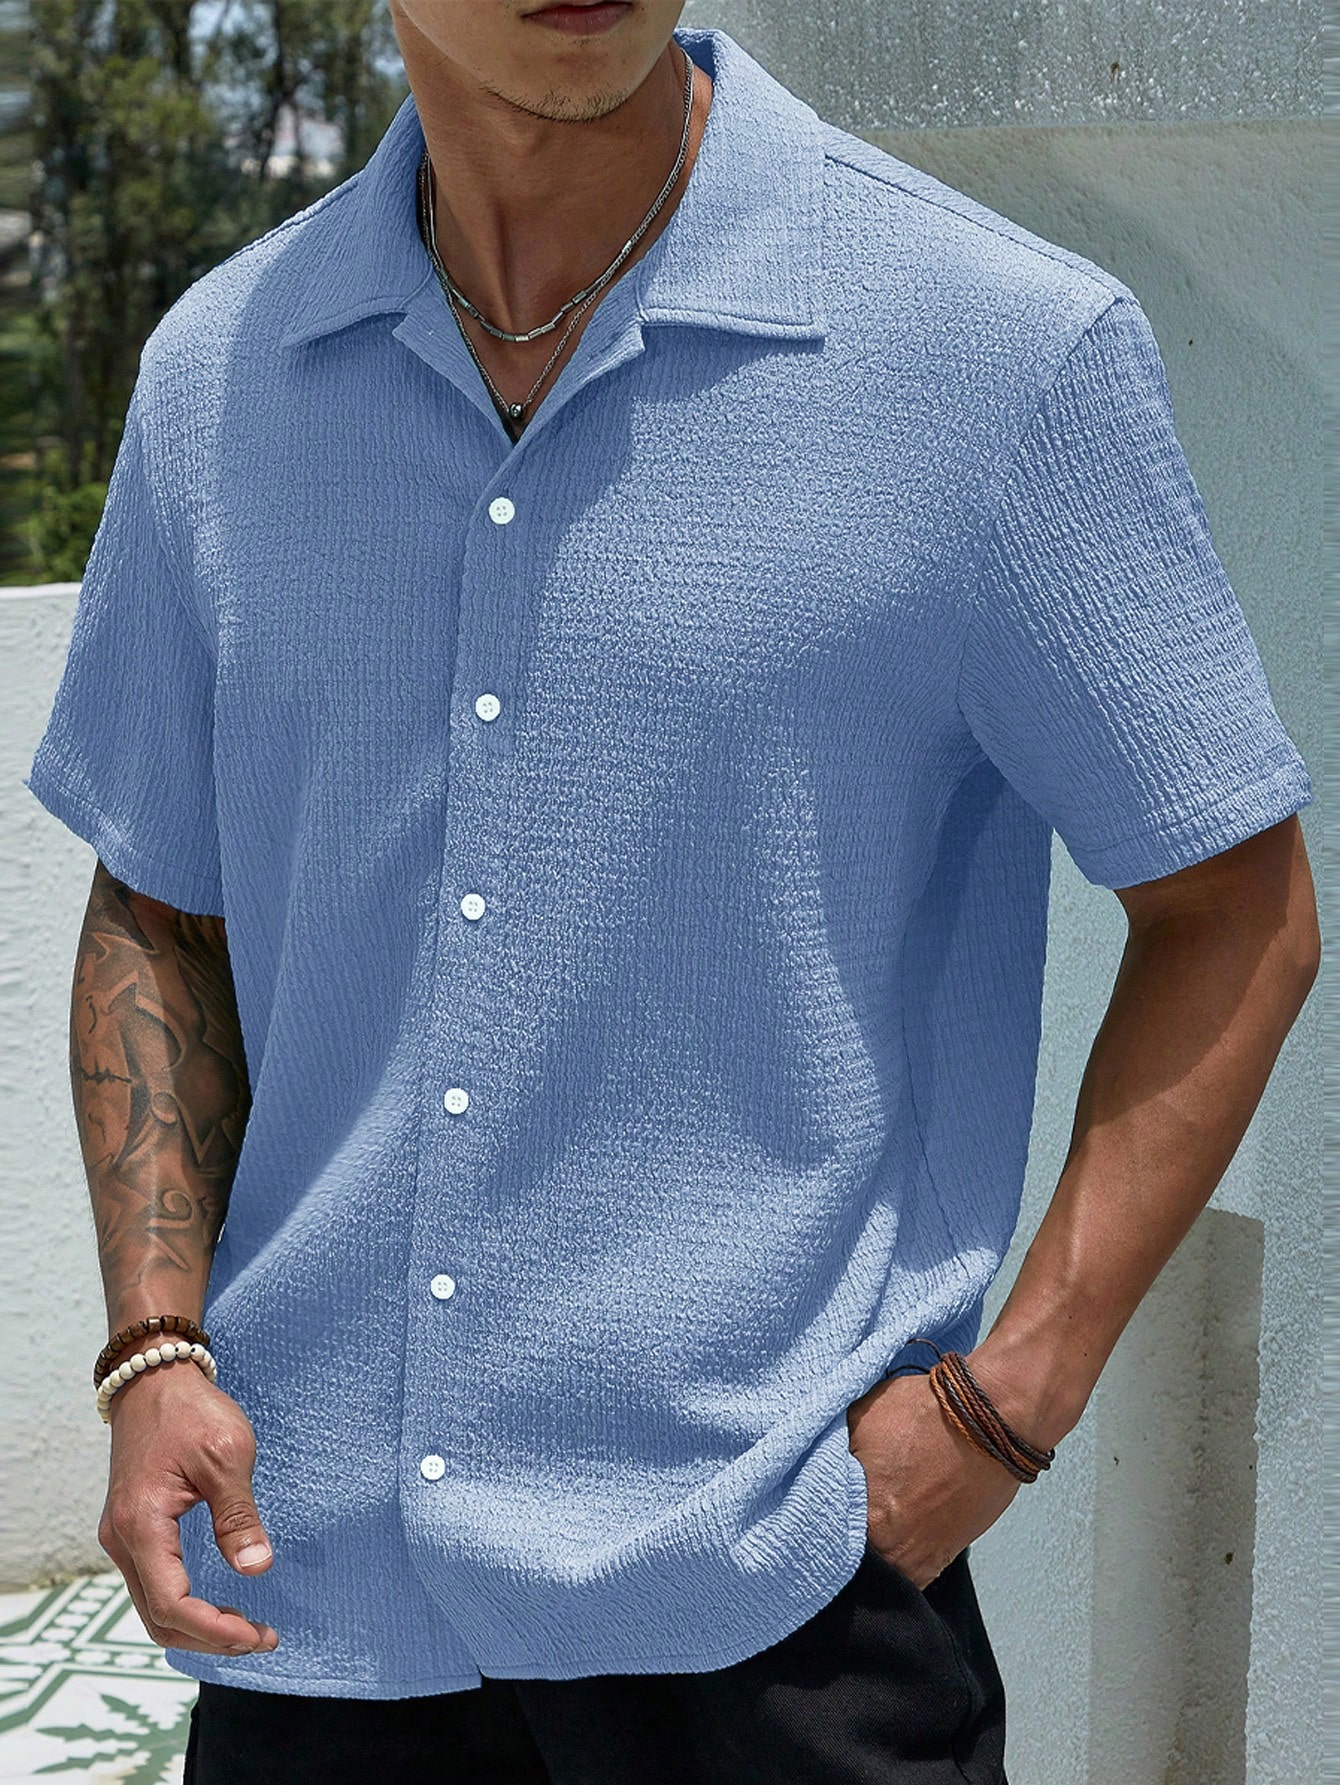 Мужская текстурированная рубашка на пуговицах с коротким рукавом Manfinity Homme, голубые рубашка мужская на пуговицах повседневная блуза с коротким рукавом свободного покроя модная сорочка на лето